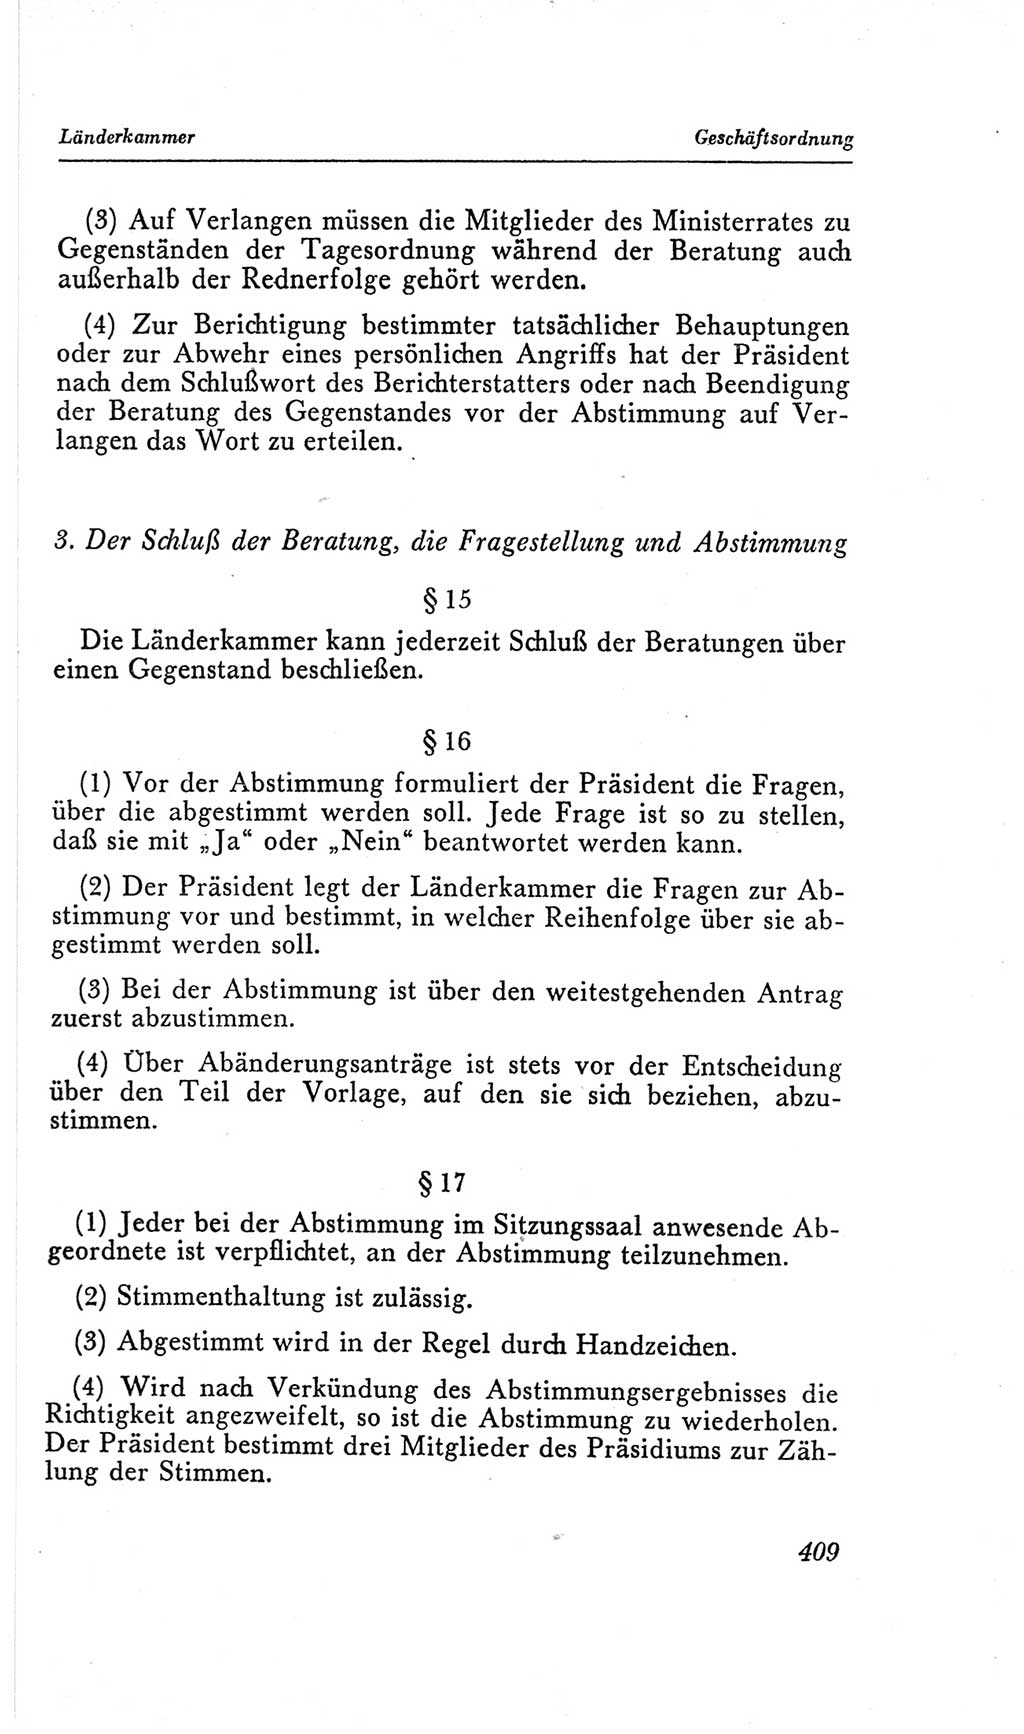 Handbuch der Volkskammer (VK) der Deutschen Demokratischen Republik (DDR), 2. Wahlperiode 1954-1958, Seite 409 (Hdb. VK. DDR, 2. WP. 1954-1958, S. 409)